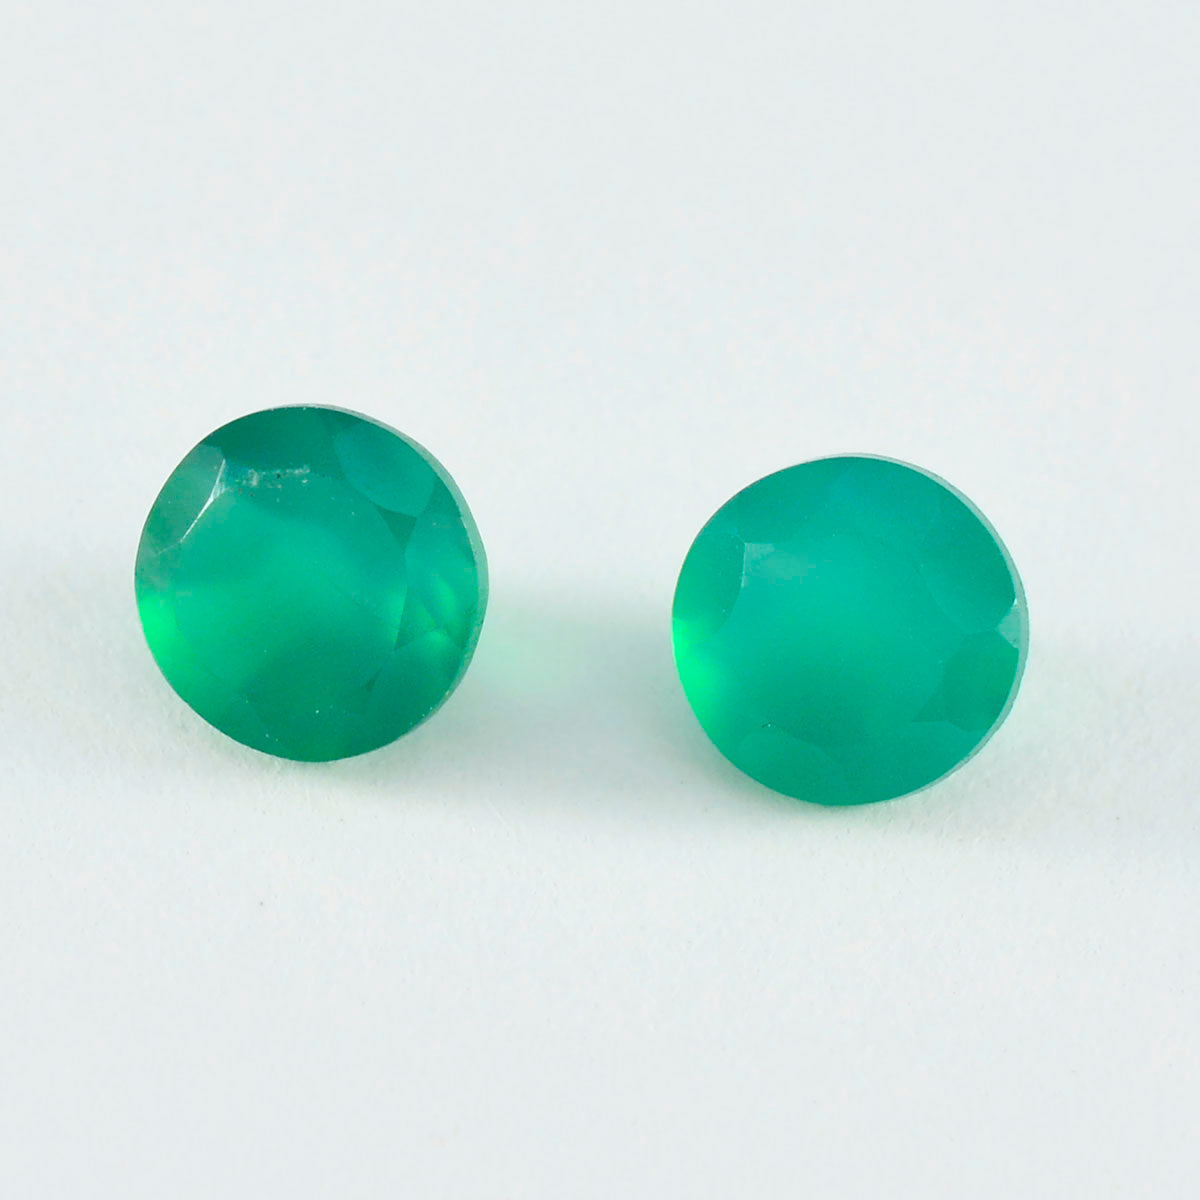 Riyogems, 1 pieza, ónix verde auténtico facetado, 10x10mm, forma redonda, gemas sueltas de buena calidad